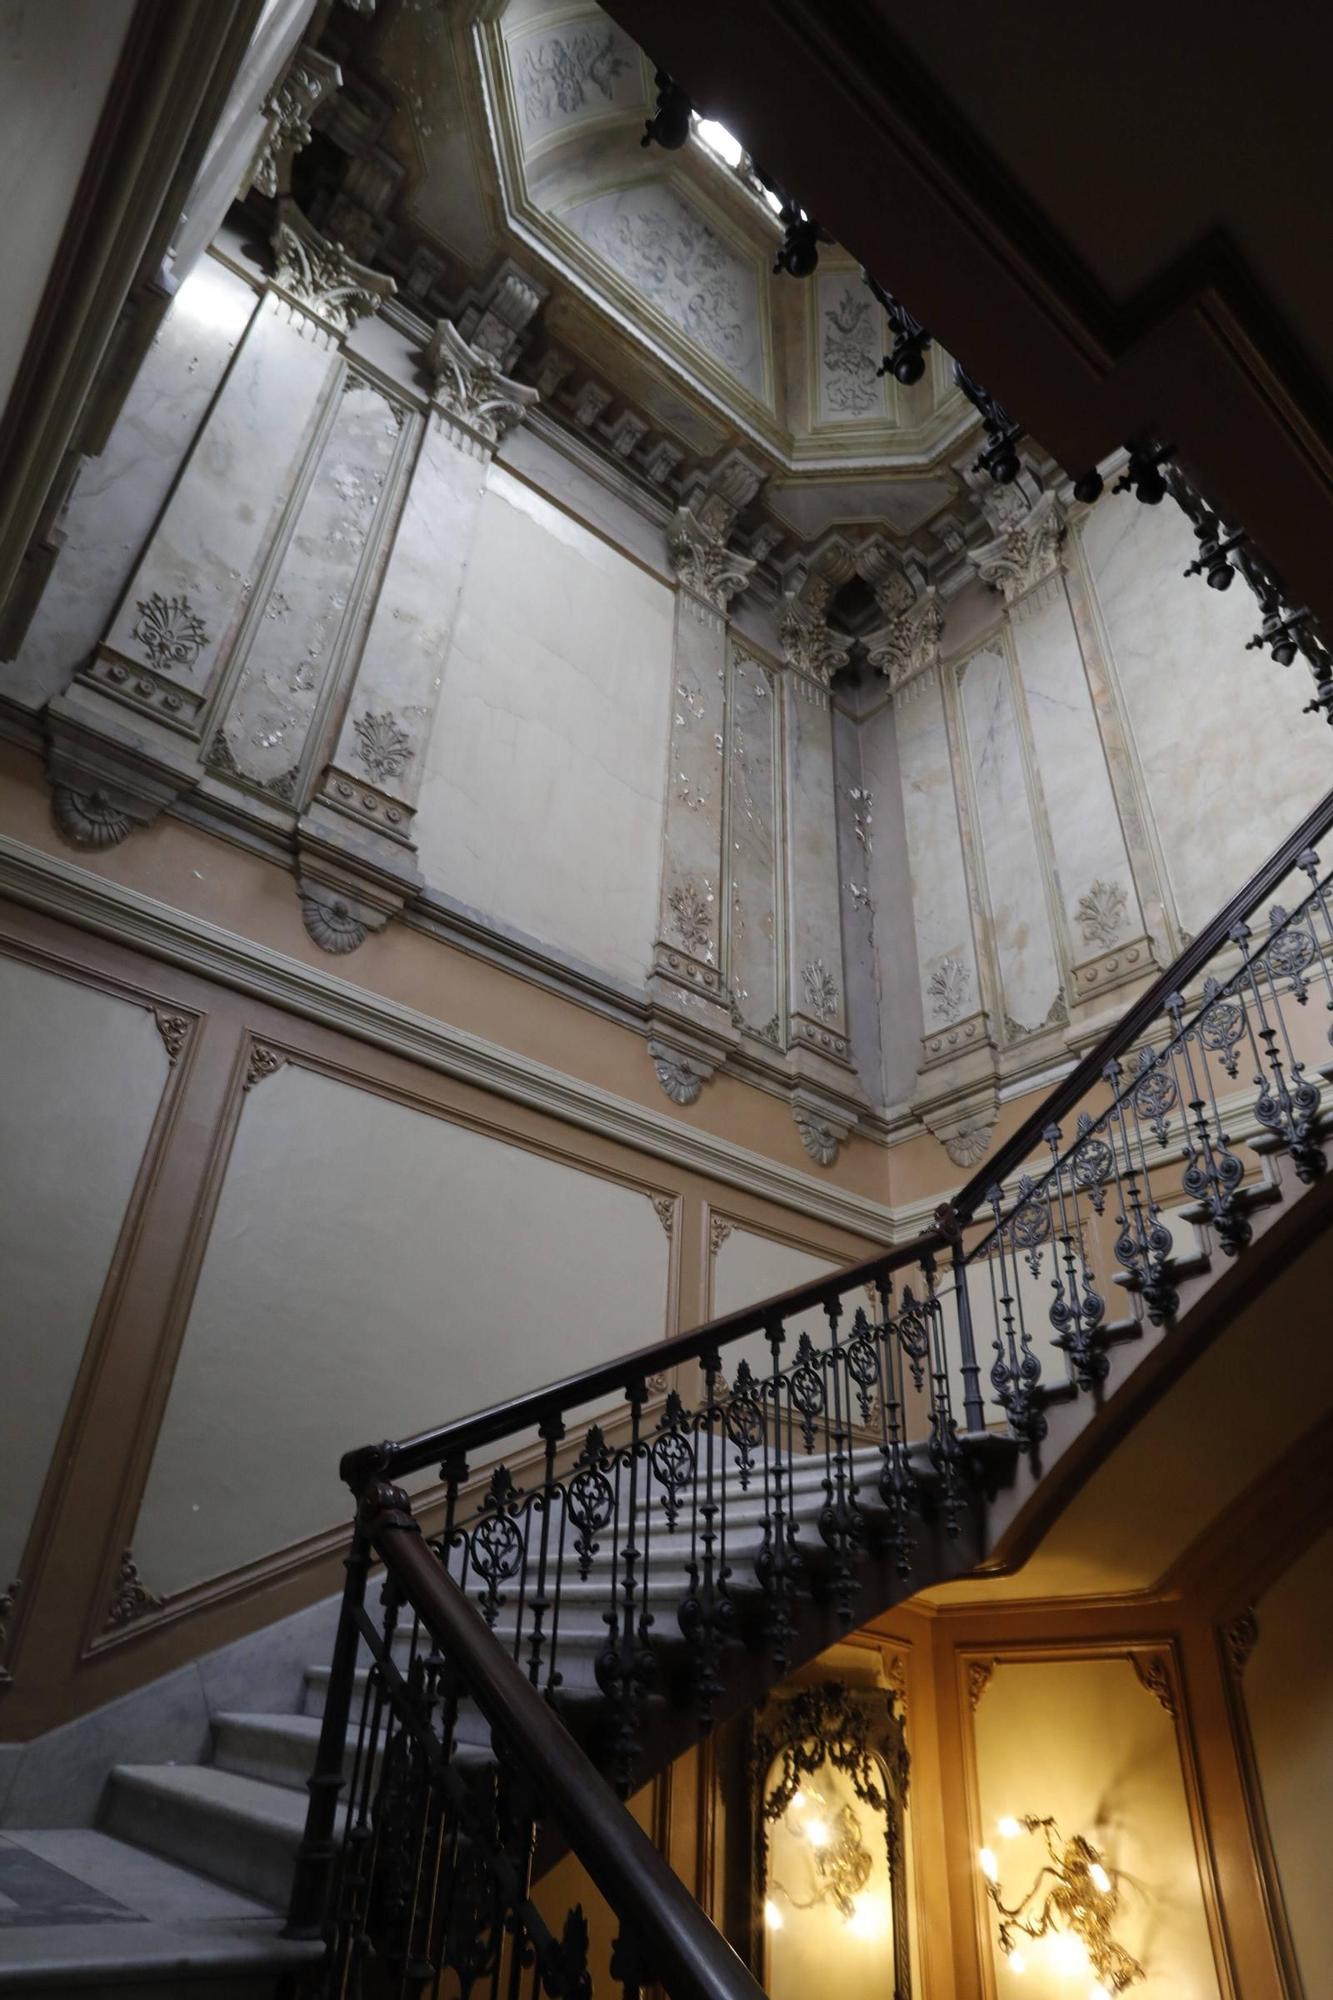 En imágenes: el interior del palace de Josefina Balera, futuro hotel 5* gran lujo en Avilés